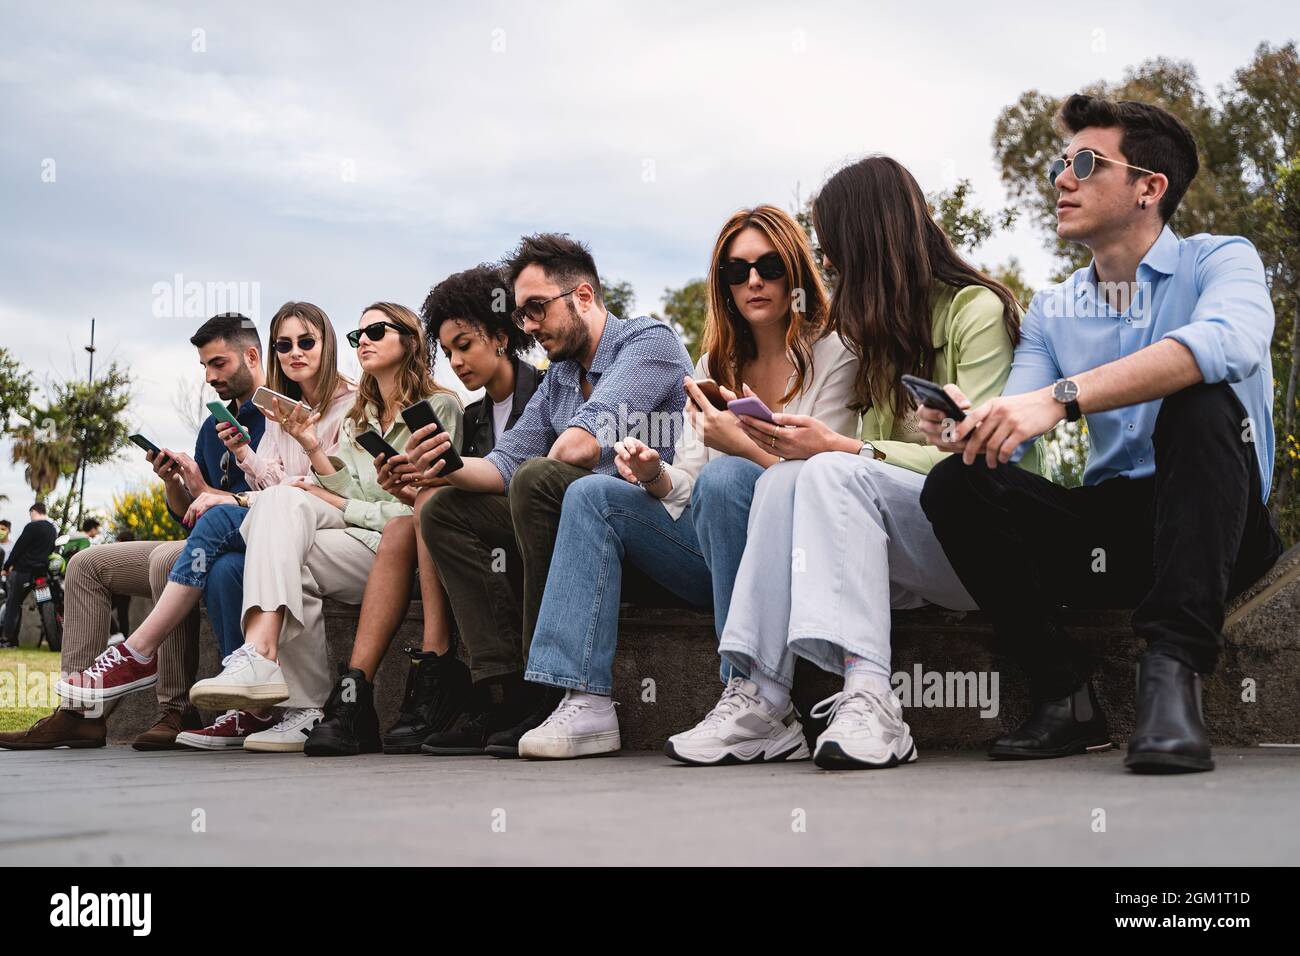 Generation z Jugendliche sitzen auf einer Bank und nutzen Smartphone. Konzept von jungen Menschen, die von Technologie und sozialen Netzwerken abhängig sind. Stockfoto